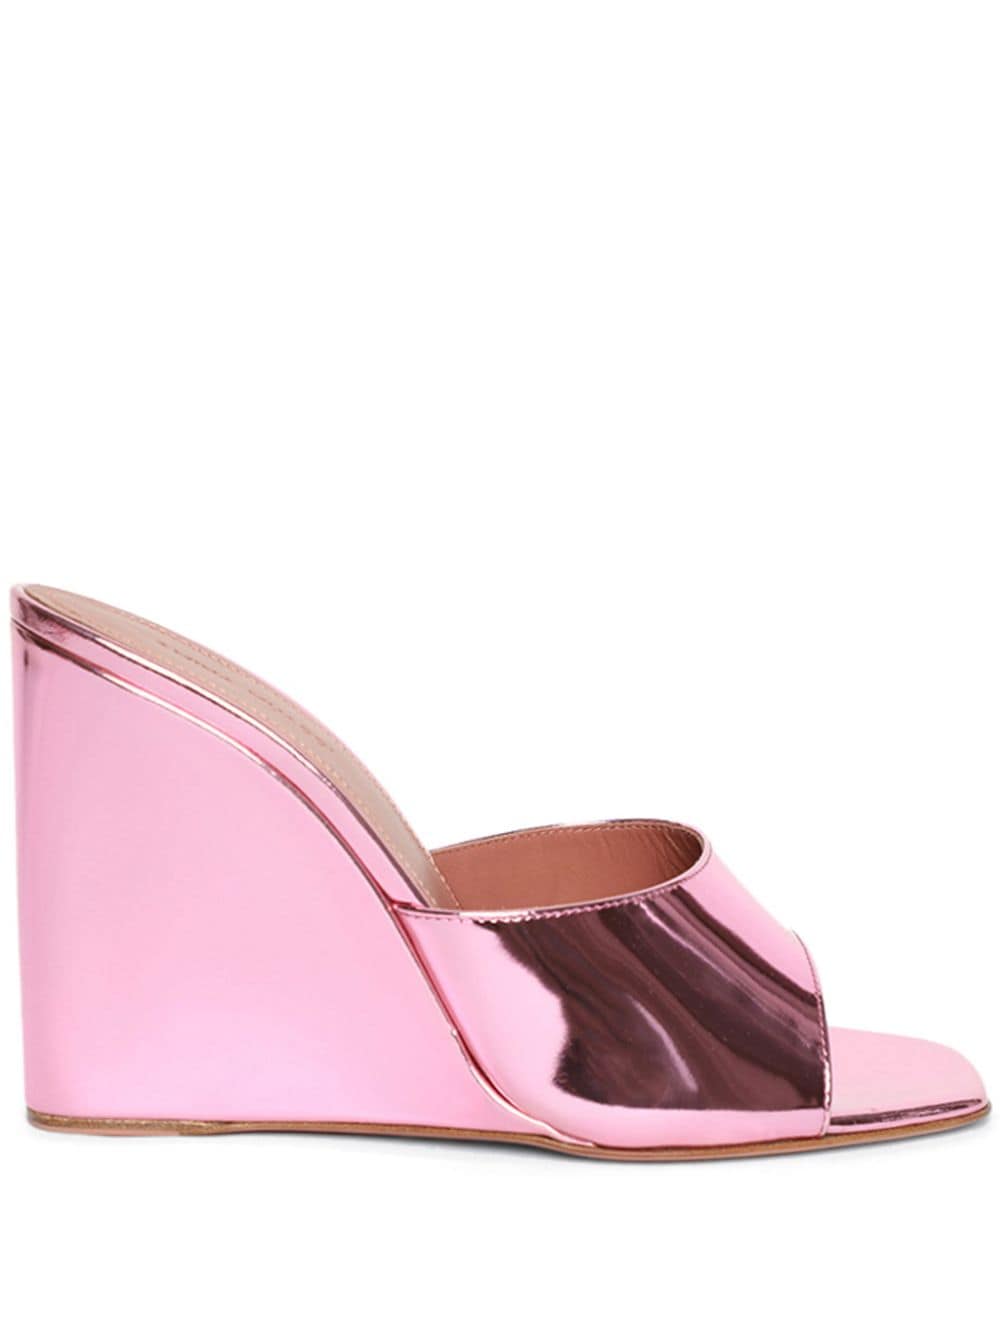 Amina Muaddi Lupita wedge sandals Pink